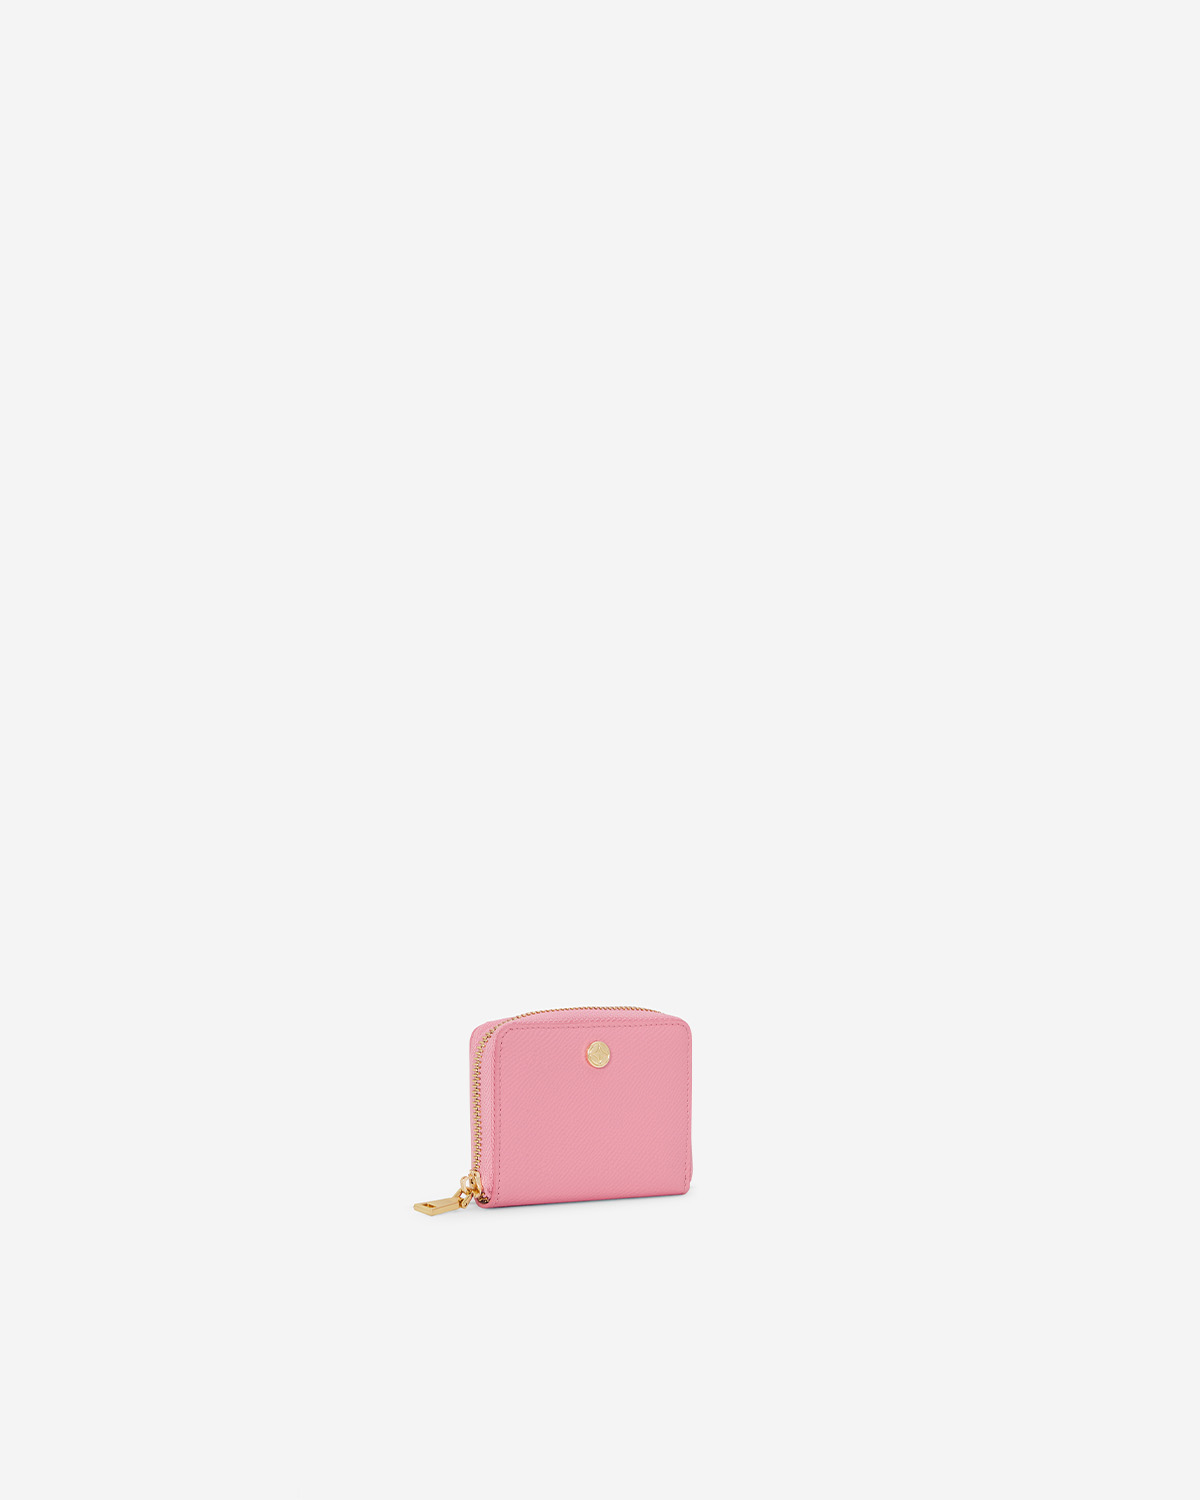 VERA Emily Zipped Wallet in Creative Pink กระเป๋าสตางค์หนังแท้ ทรงสั้น ซิปรอบ สีชมพู